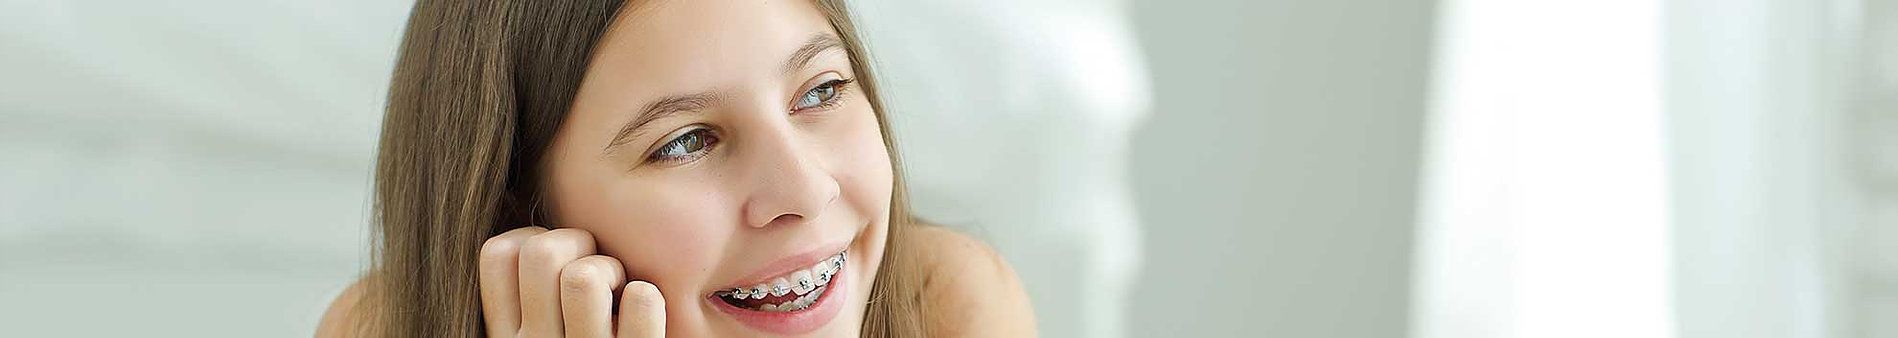 tratamientos dentales clinica dental ventas toledo